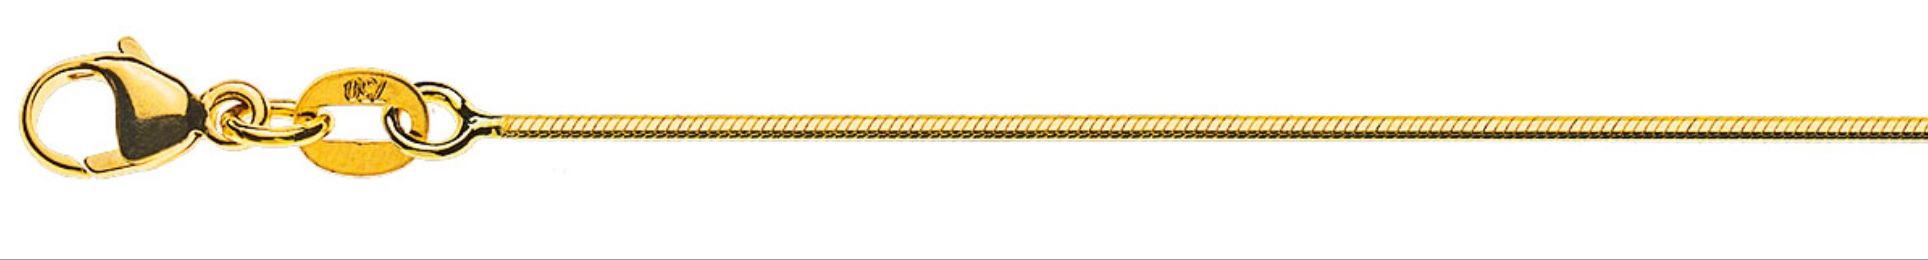 AURONOS Prestige Halskette Gelbgold 18K Schlangenkette diamantiert 40cm 1.0mm